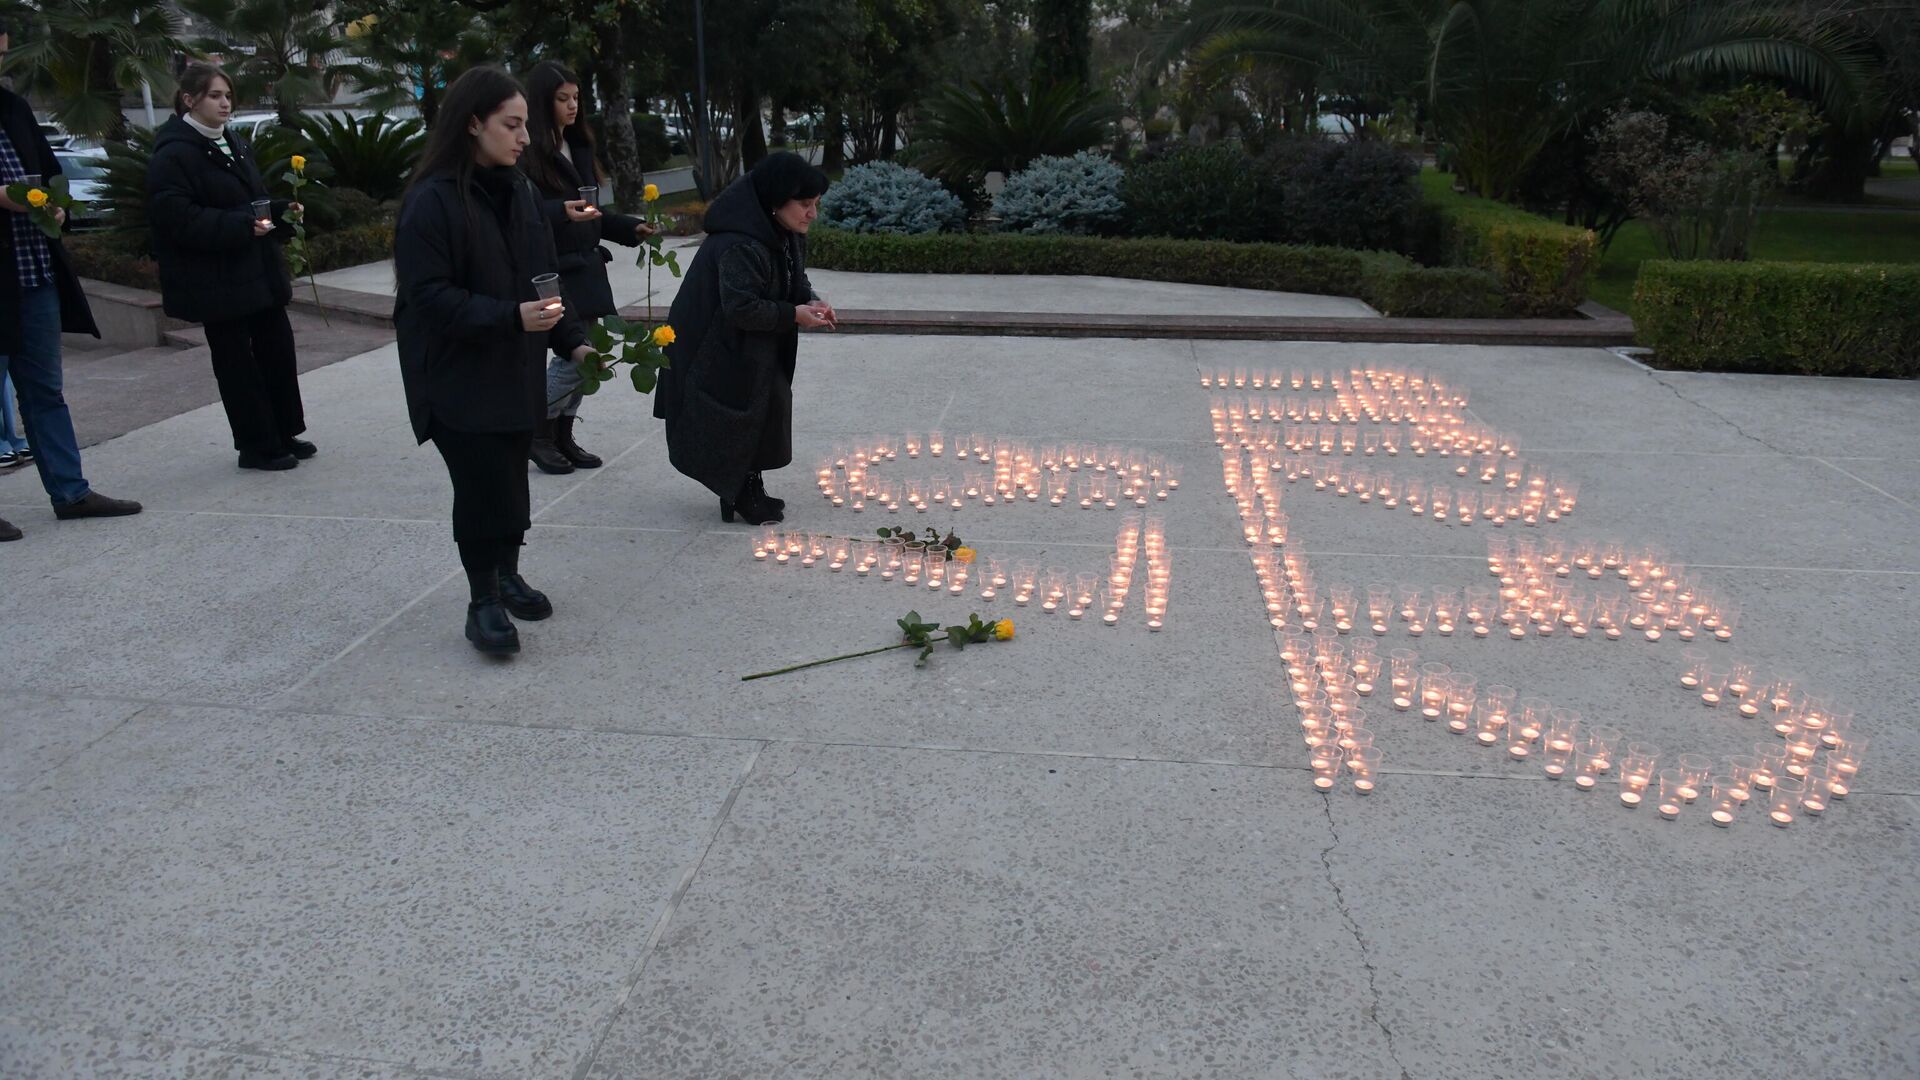 Акция зажжения свечей посвященная Латской трагедии  - Sputnik Абхазия, 1920, 14.12.2021